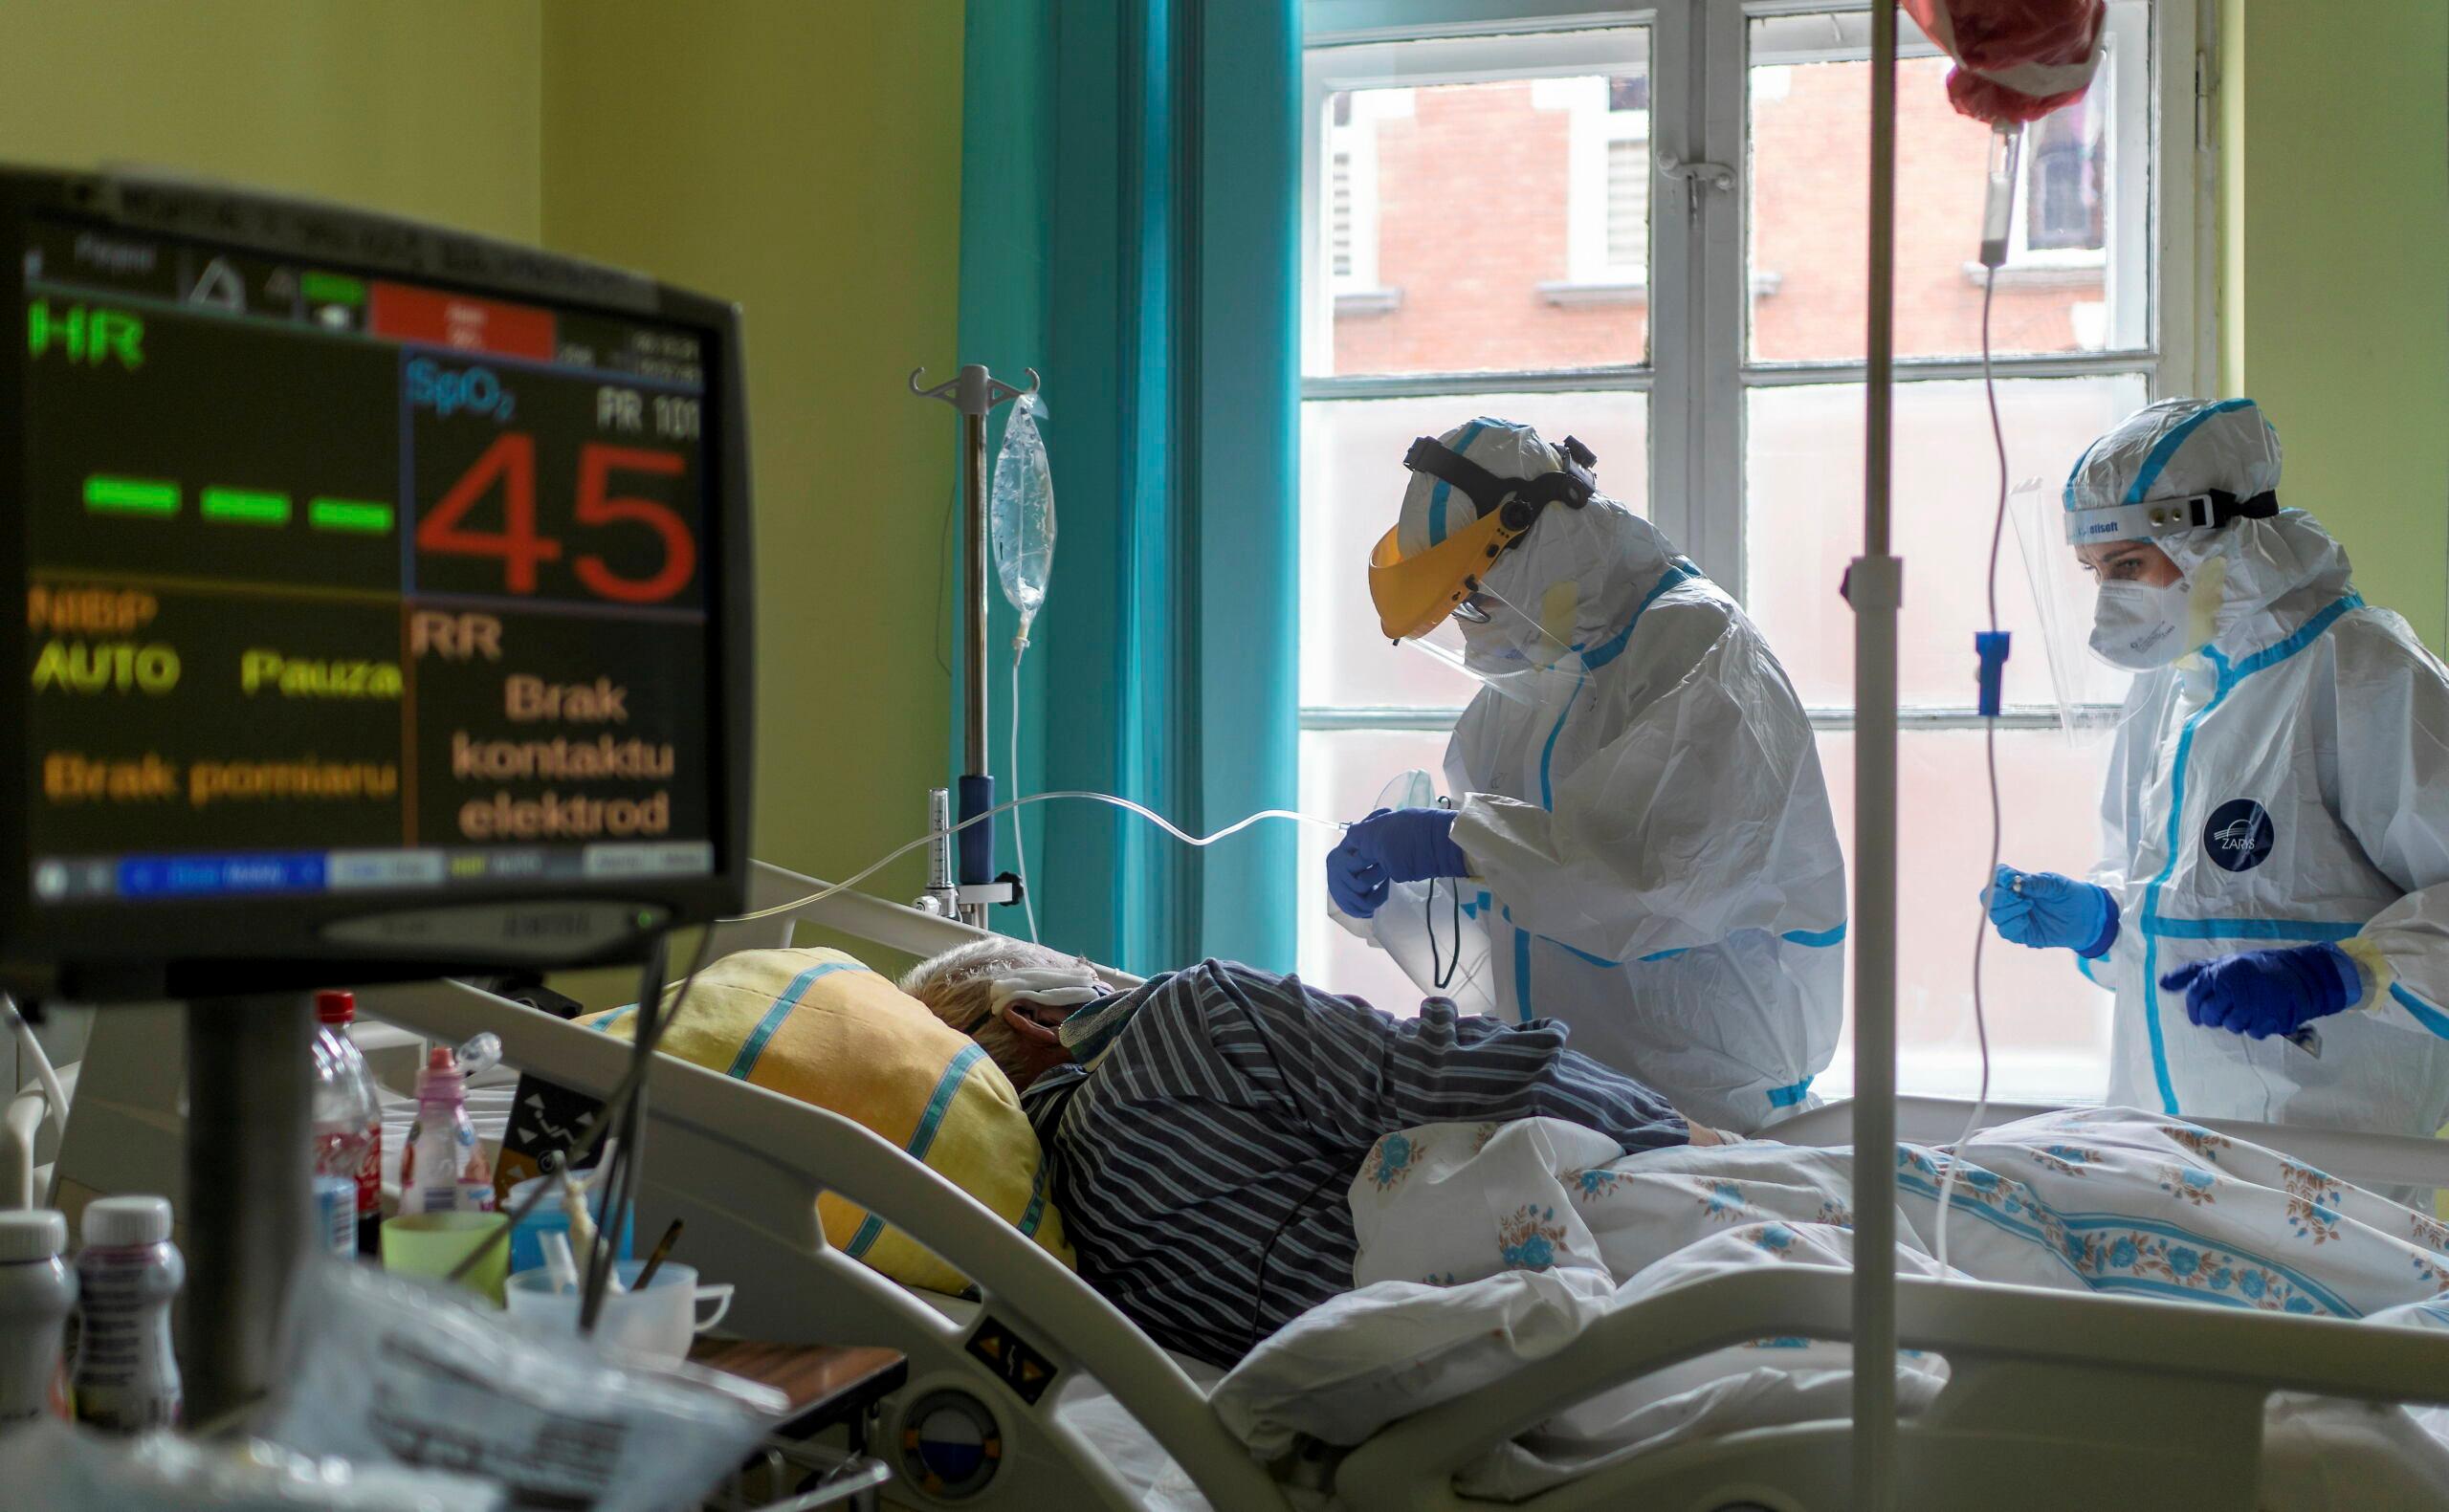 Personel w kombinezonach ochronnych zajmuje się chorym w oddziale covidowym Szpitala Miejskiego w Gliwicach